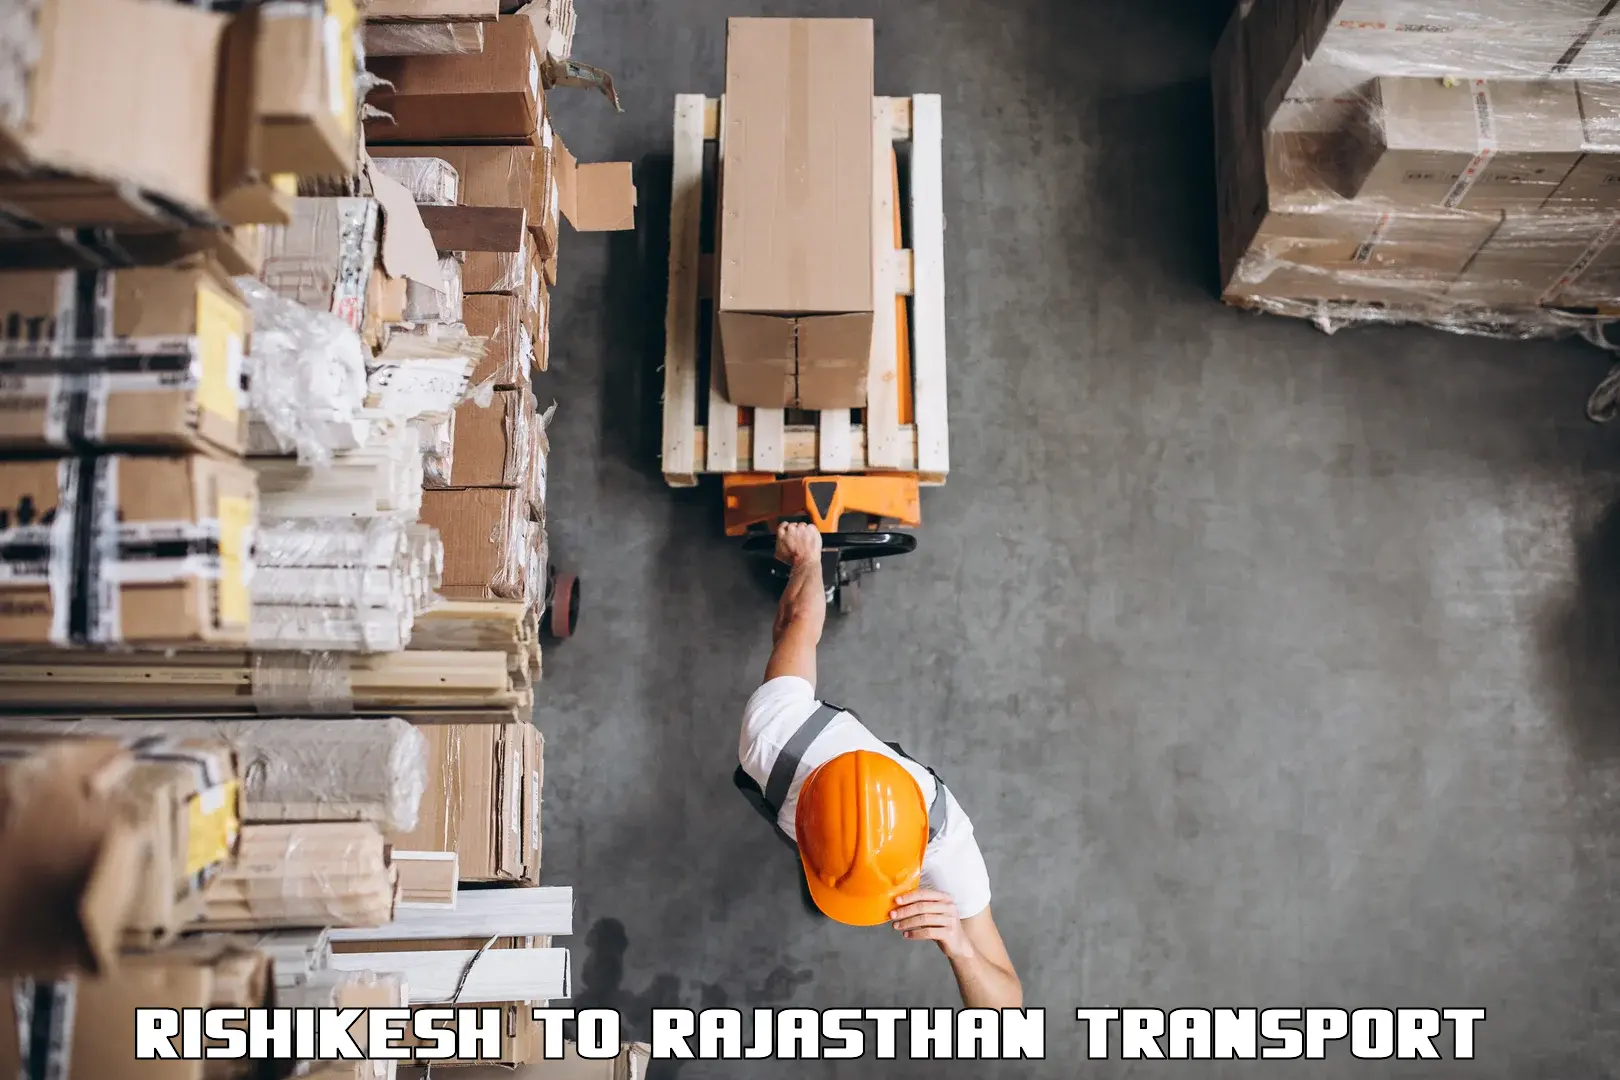 Daily transport service Rishikesh to Aklera